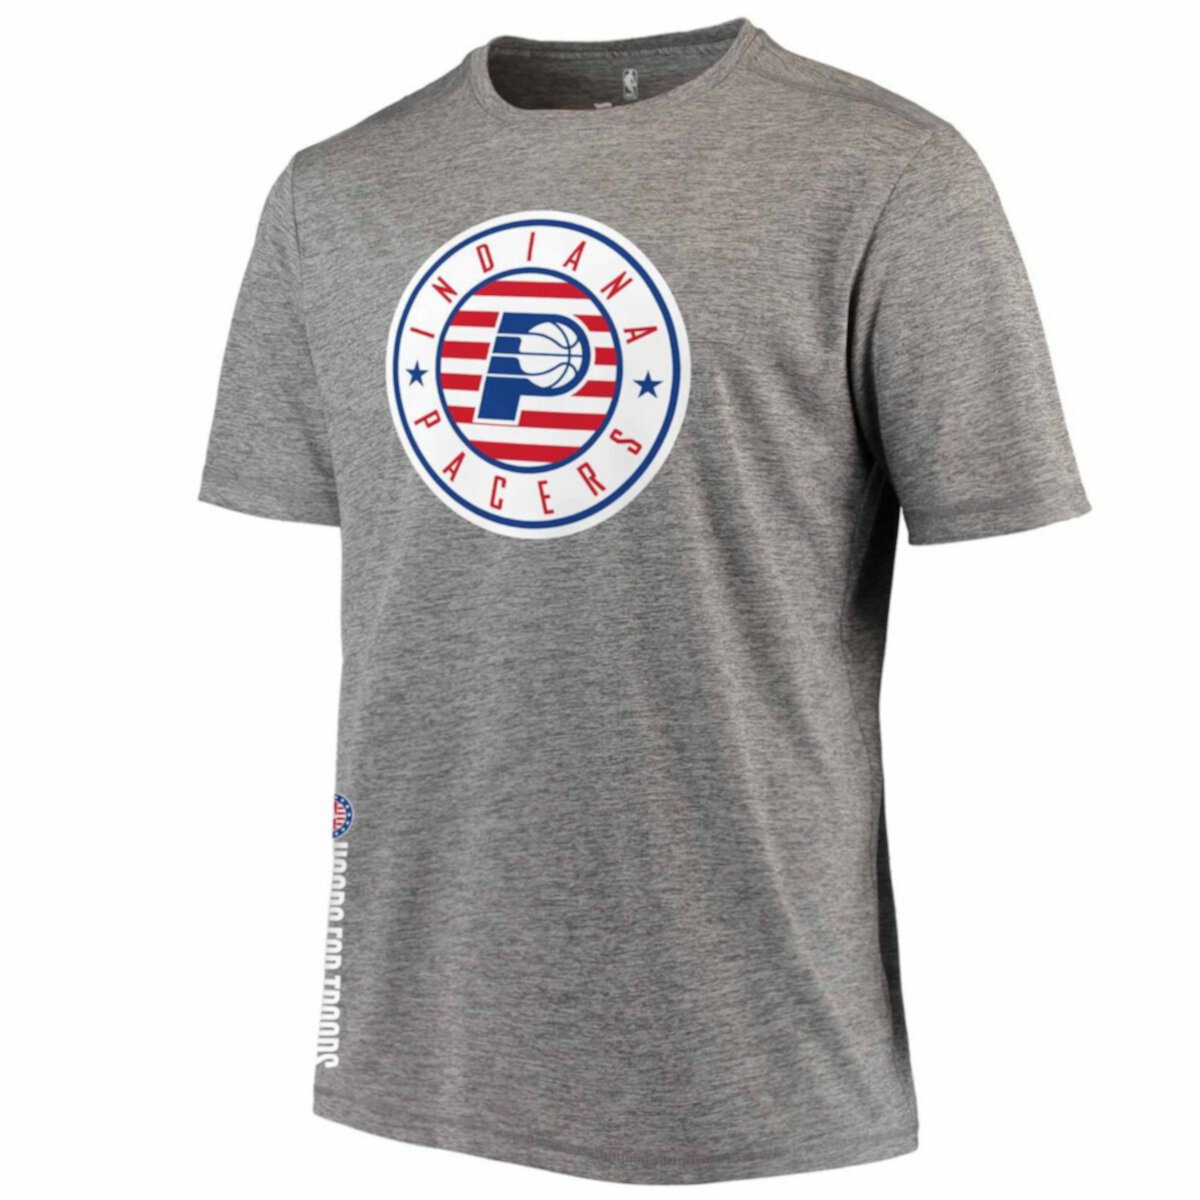 Мужская футболка с логотипом Fanatics серого цвета Indiana Pacers Hoops For Troops Fanatics